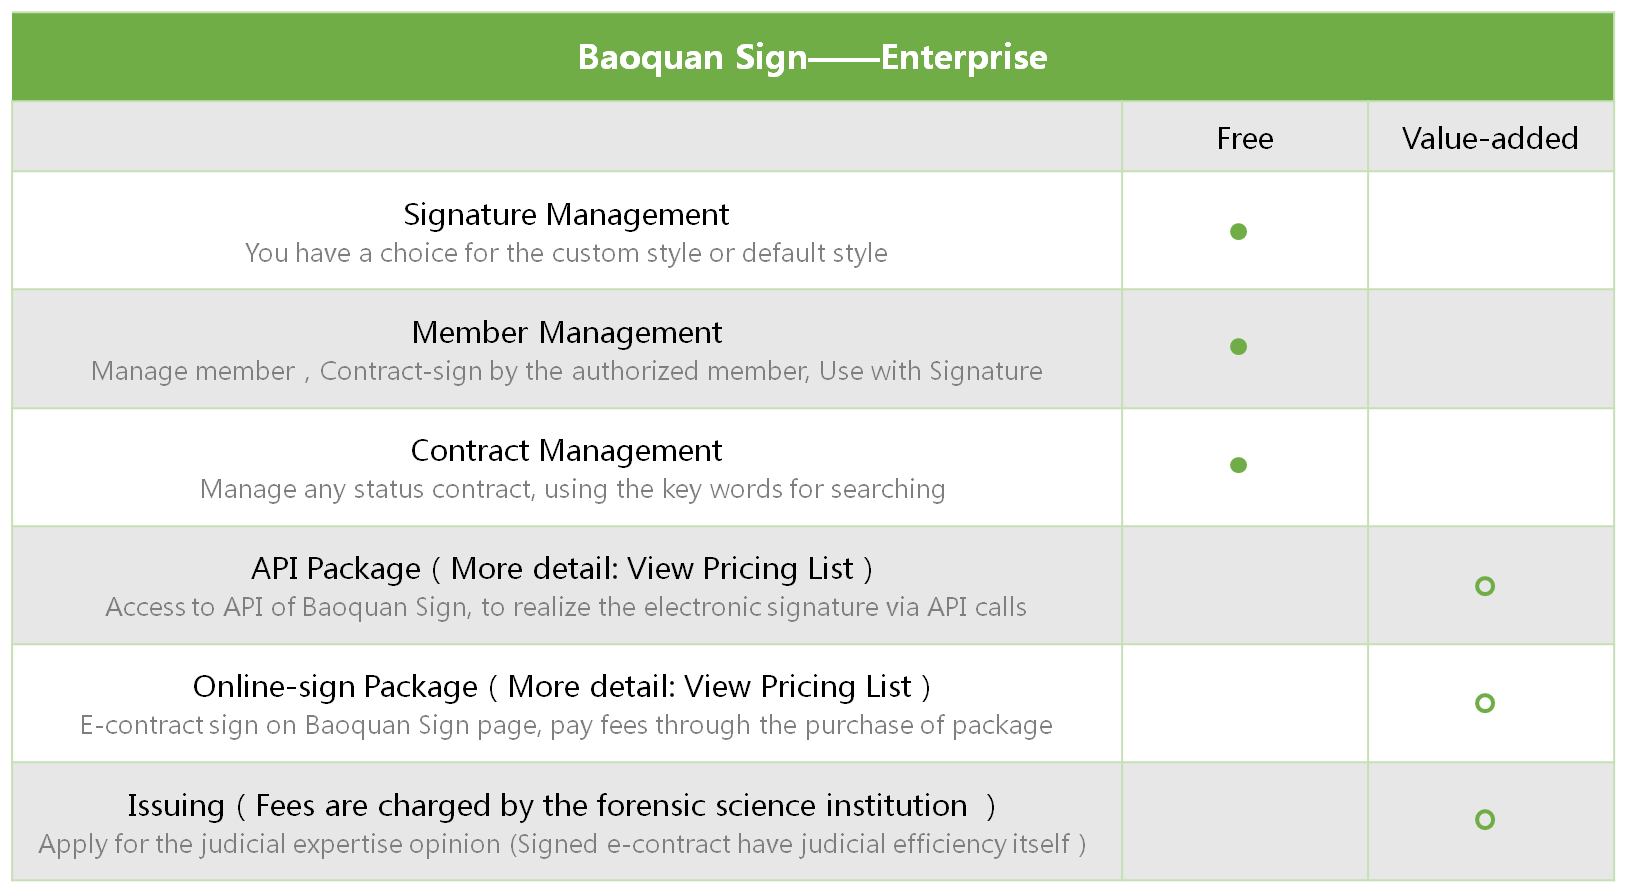 Baoquan Sign